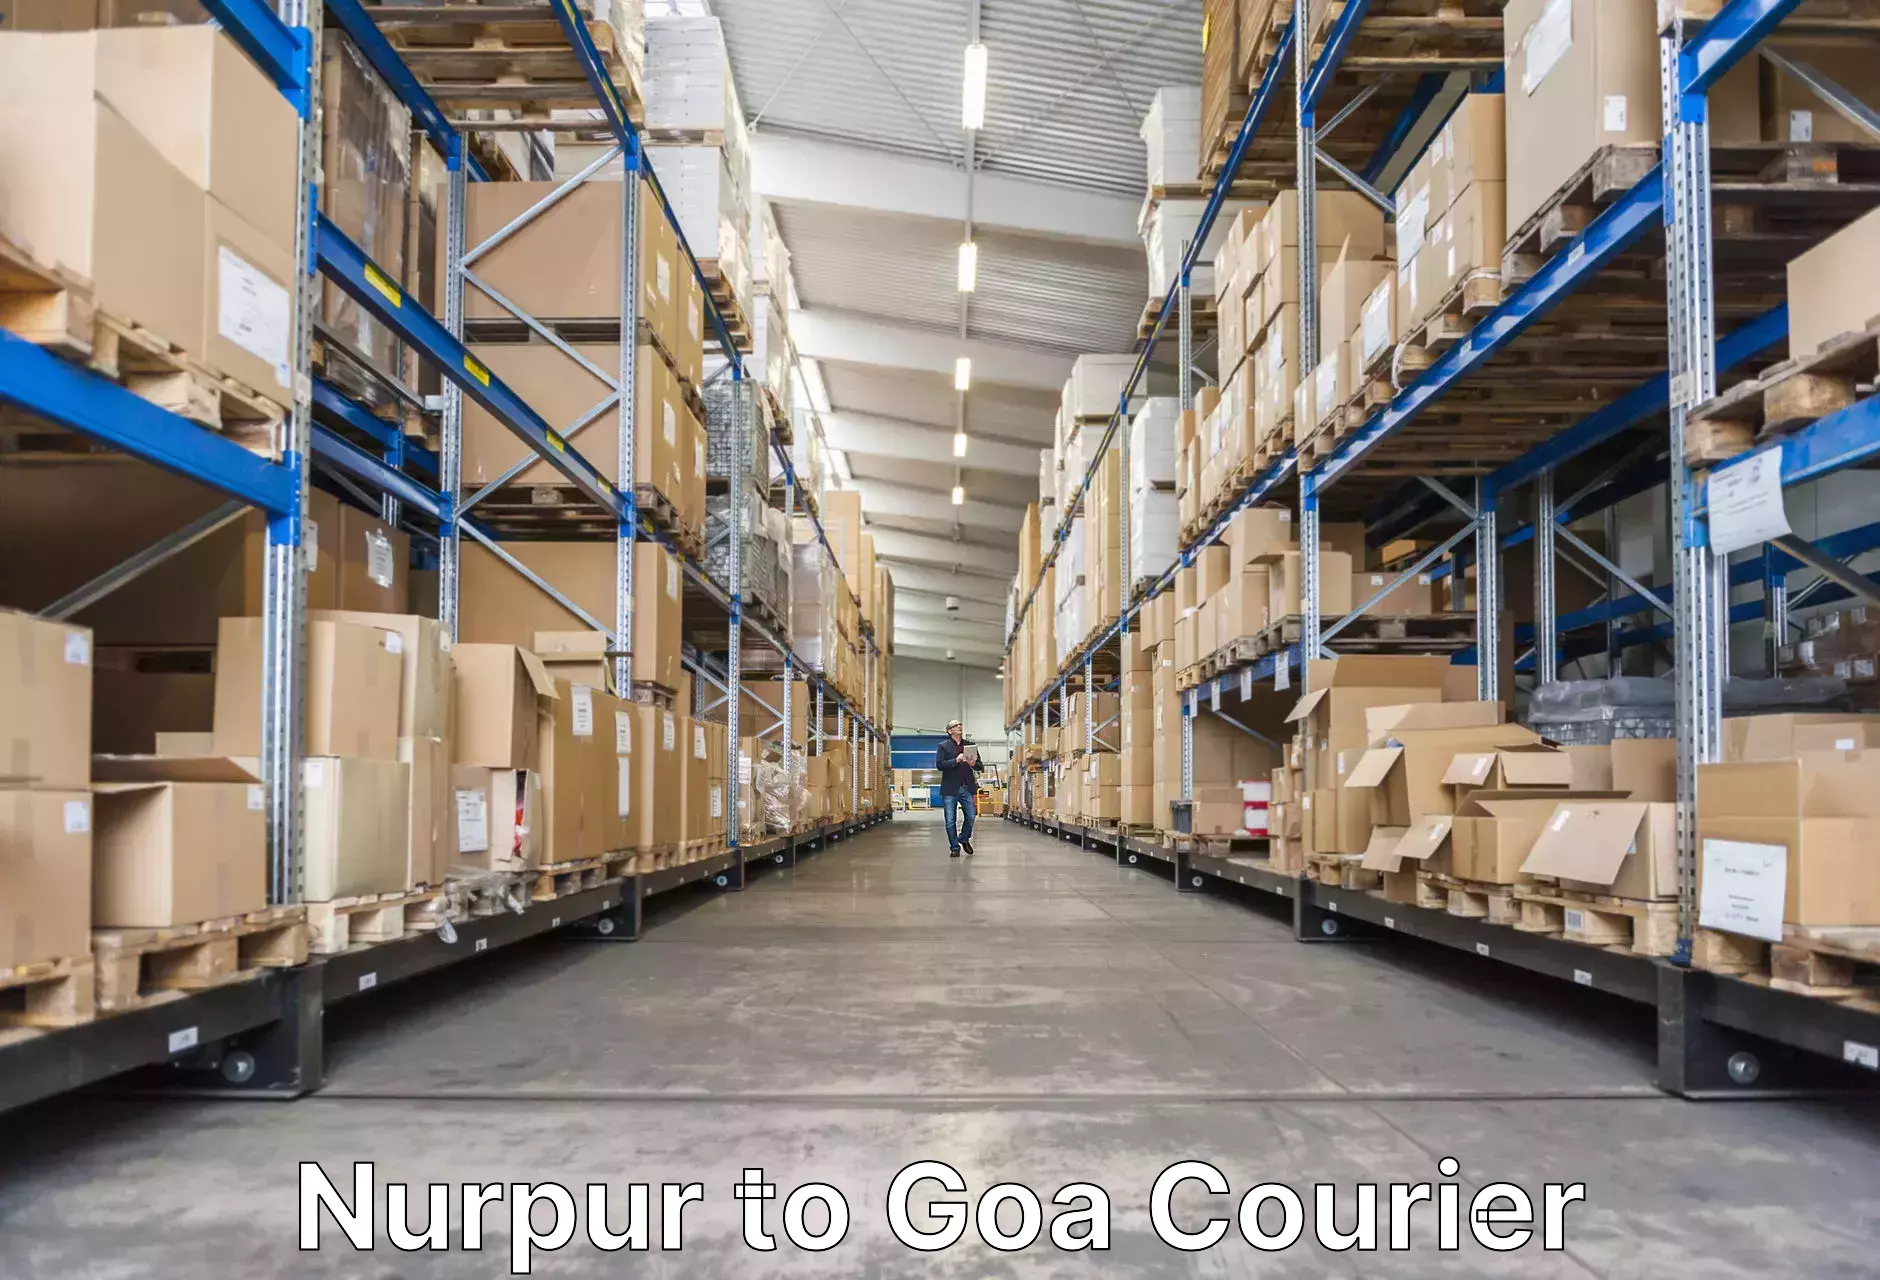 Luggage transport consultancy Nurpur to Goa